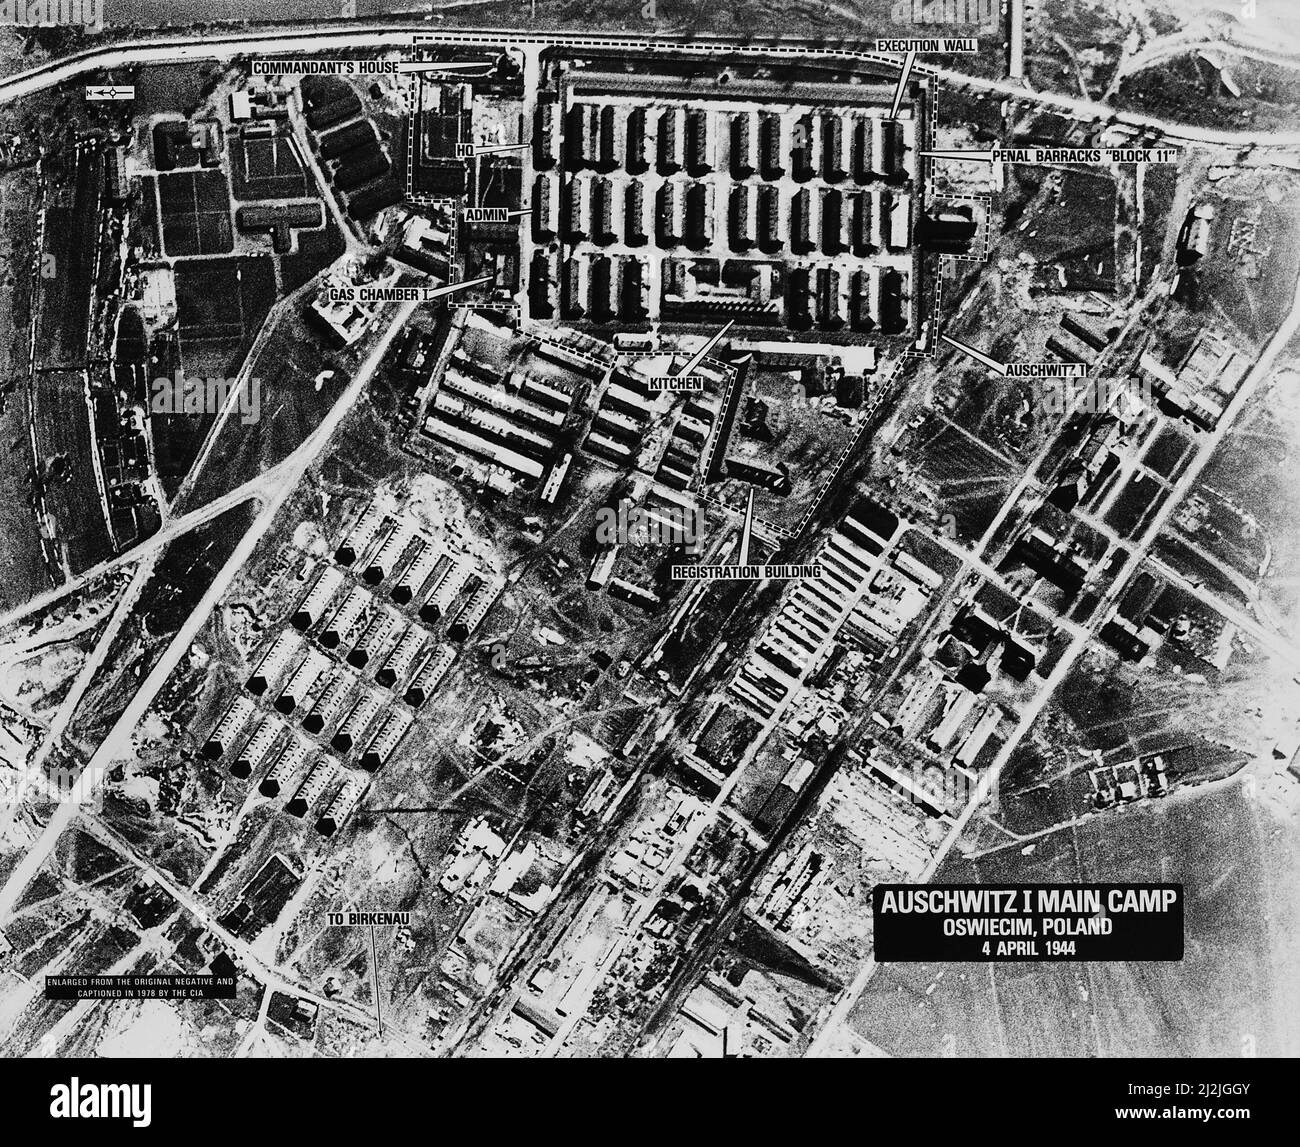 Una fotografia di ricognizione aerea del campo di concentramento di Auschwitz che mostra il campo di Auschwitz i, aprile 1944 Foto Stock